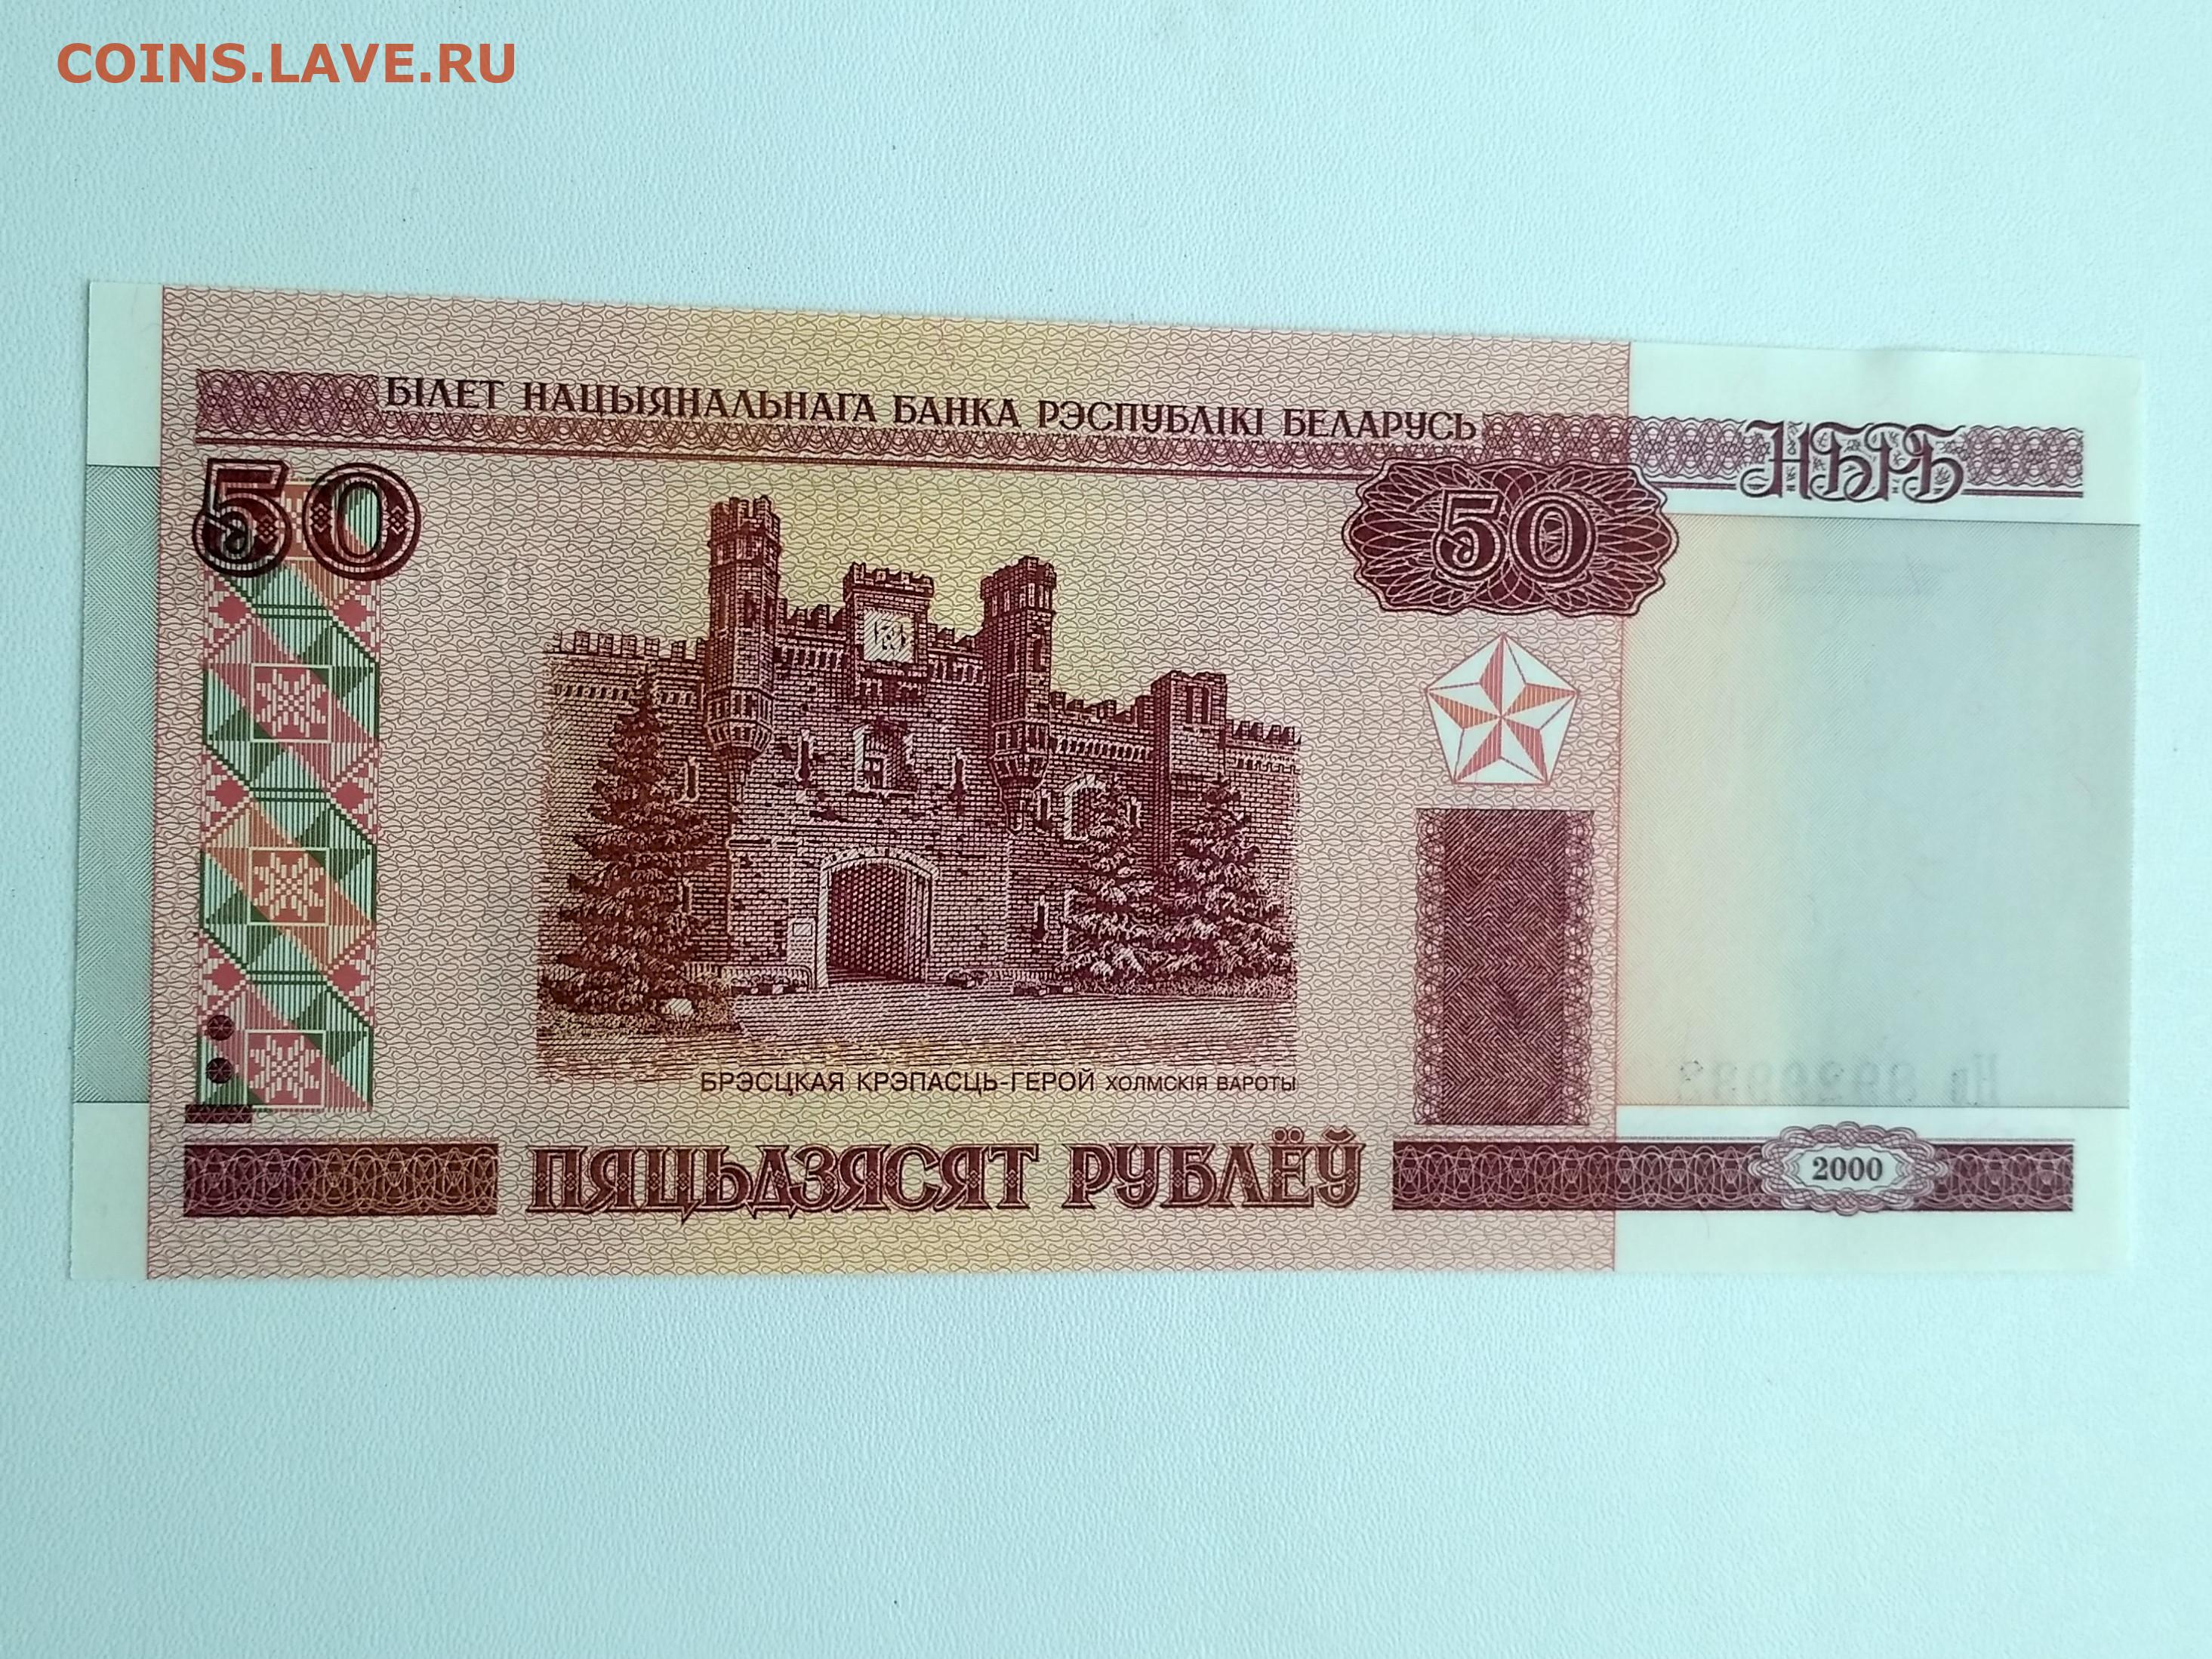 3 тысячи белорусских рублей на русские рубли. 45 Белорусских рублей. 50 Белорусских копеек.